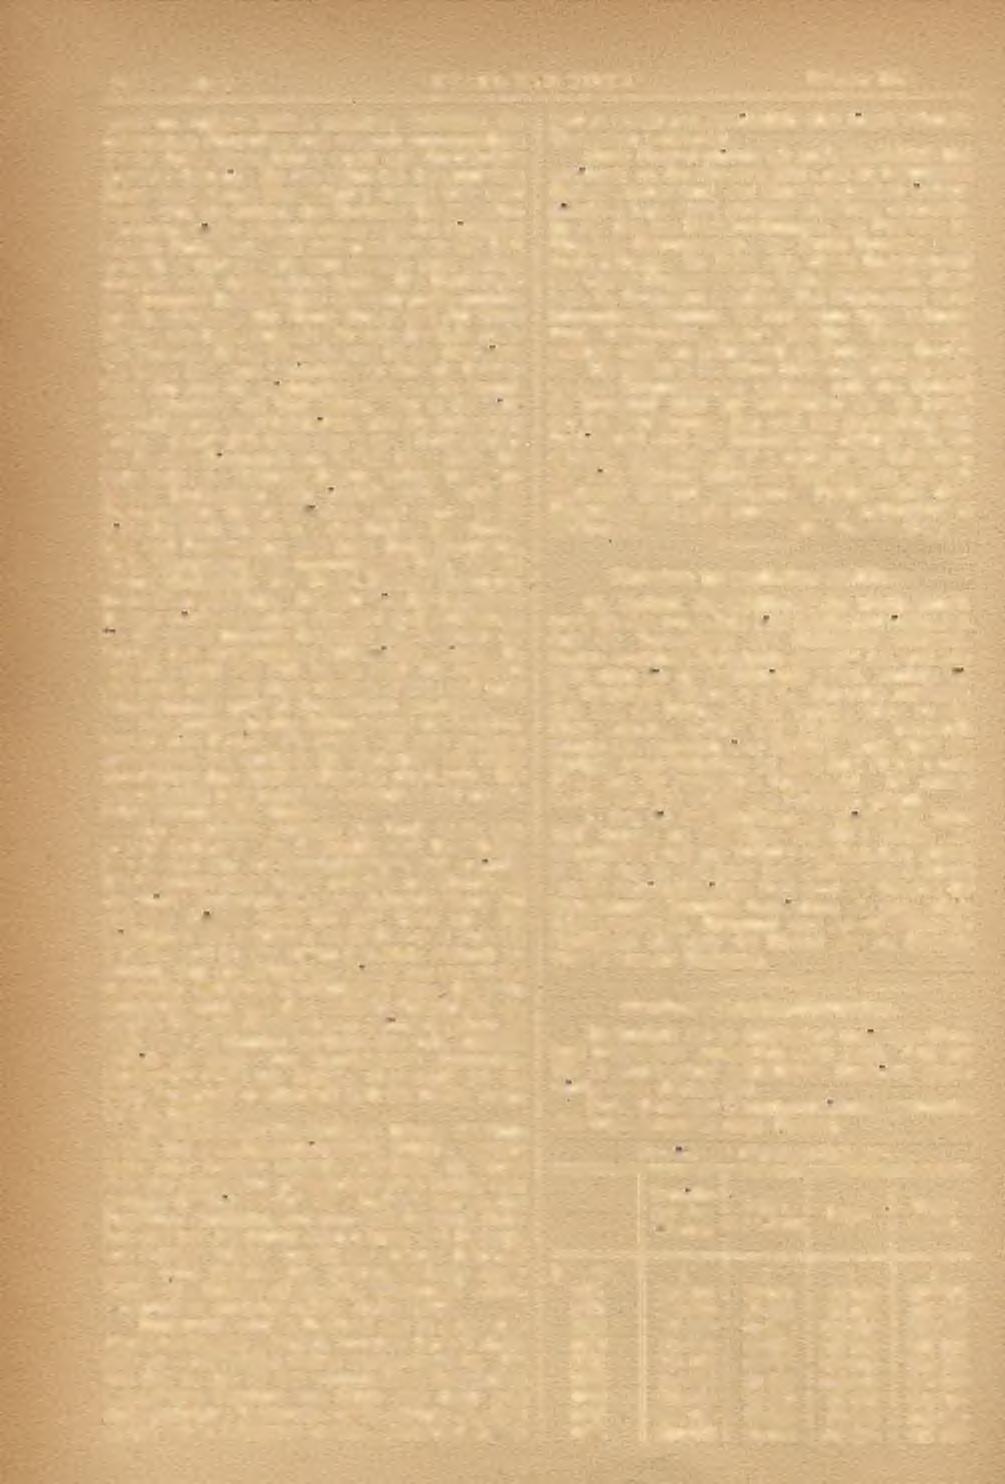 138 Nr. 2. STAHL UND EISEN.* Februar 1886.